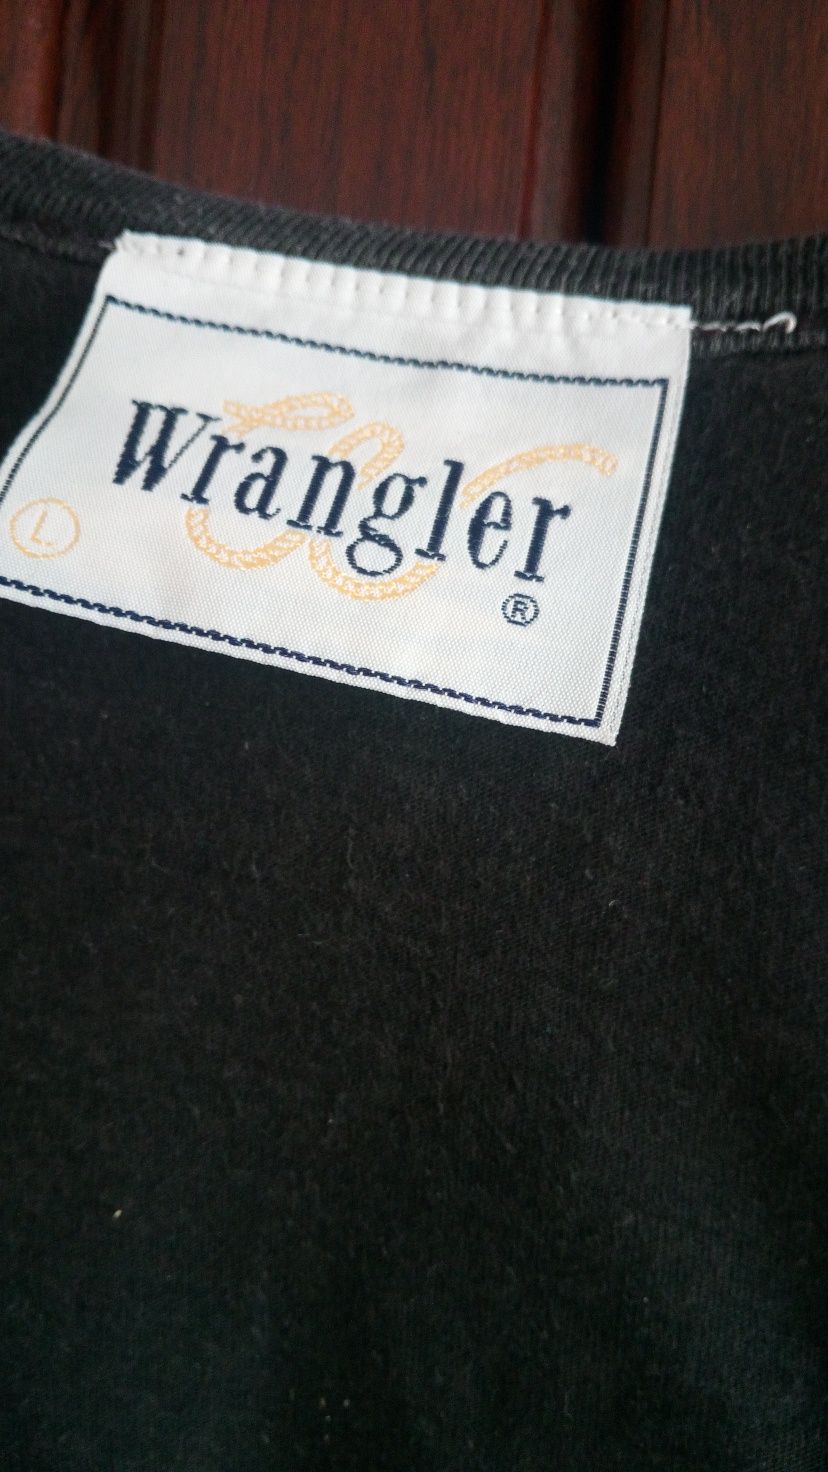 71. Koszulka męska rozmiar L/XL firmy Wrangler